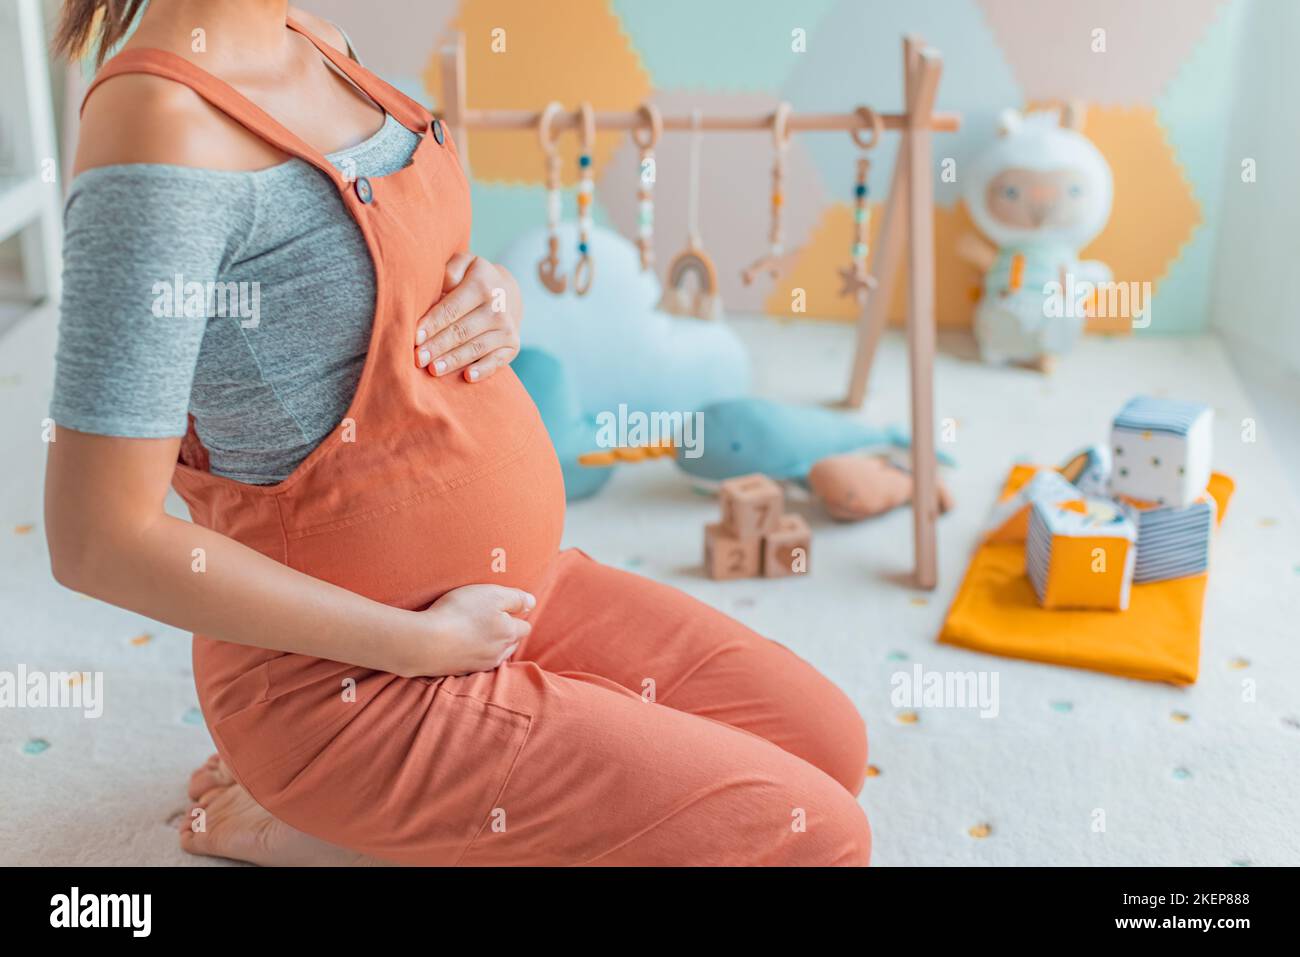 Schwangeren Bauch mit Baby-Aktivität Turnhalle Spiel, Spielzeug und Spielmatte in Kinderzimmer oder Spielzimmer. Schwangerschaftskonzept und Heimtextilien Stockfoto